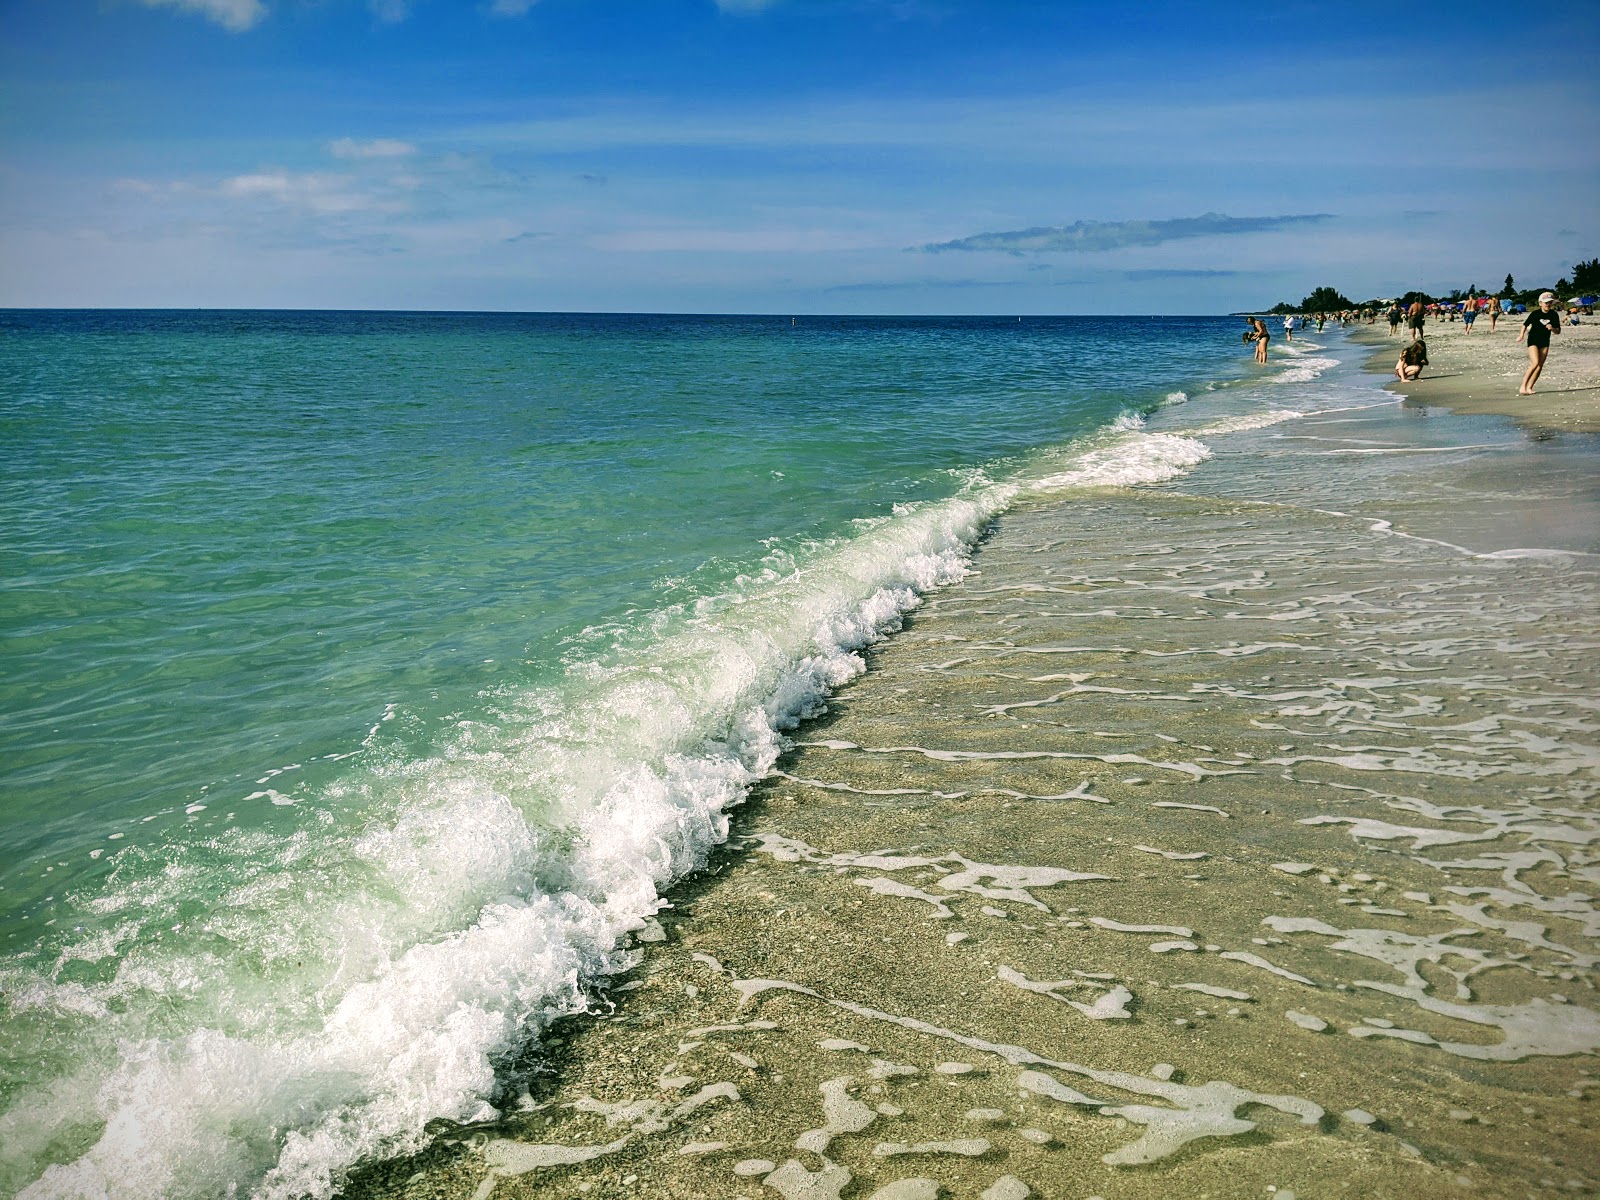 Foto von Manasota Key beach - beliebter Ort unter Entspannungskennern